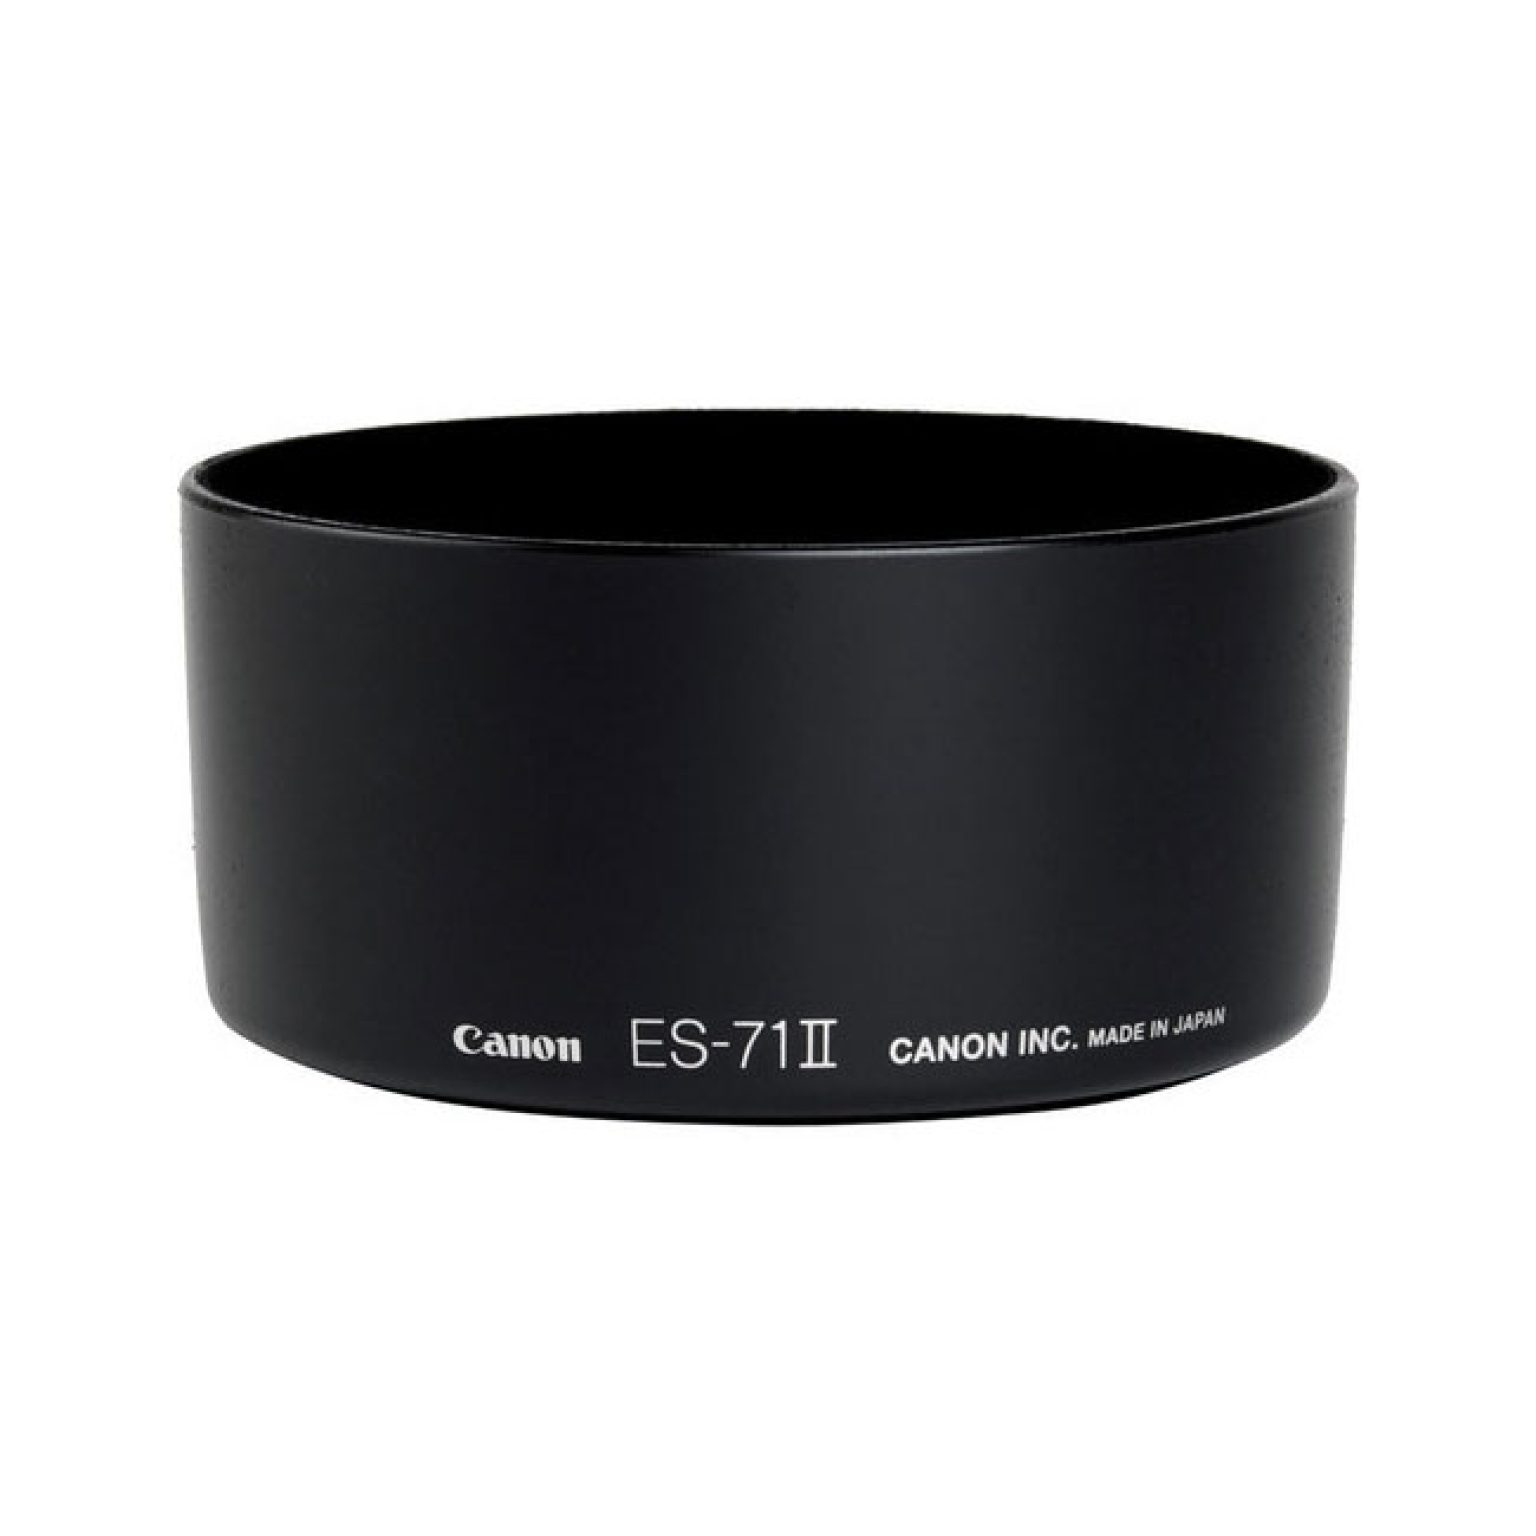 Canon ES 71 II Lens Hood For EF 50mm f1.4 USM